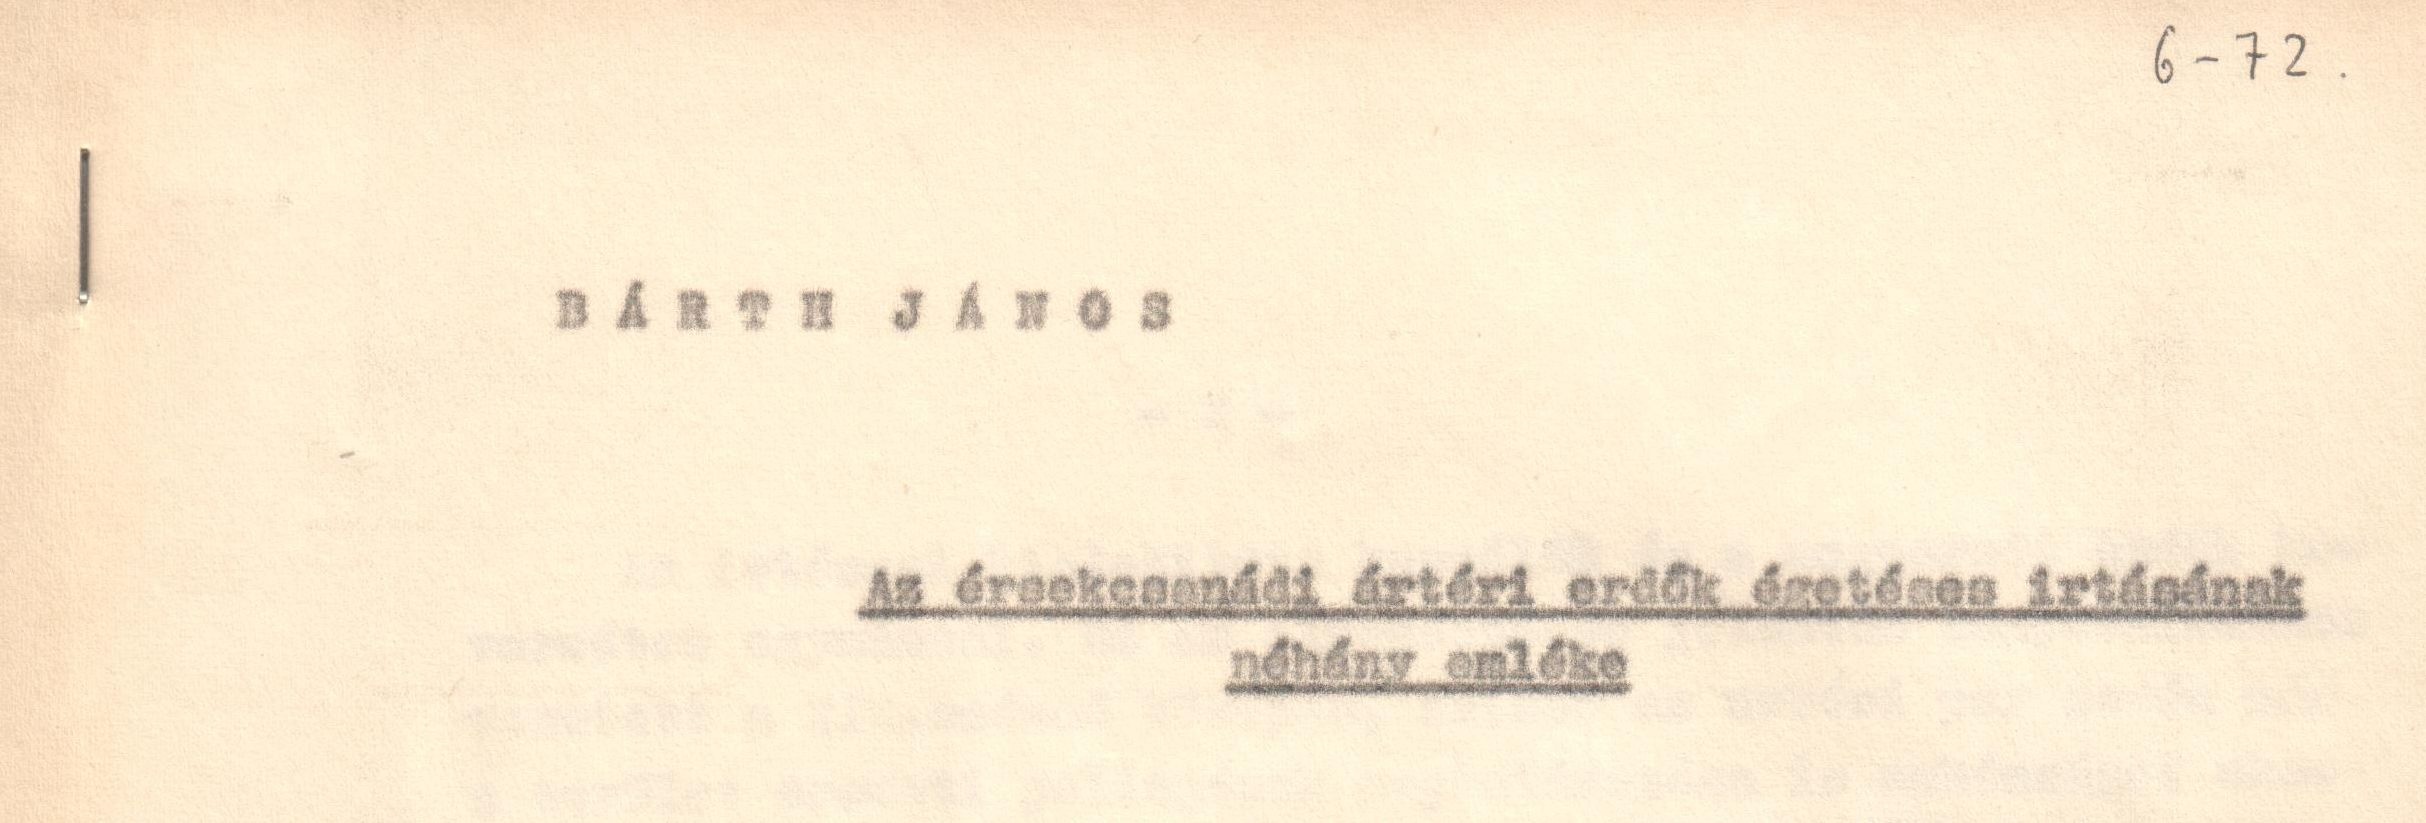 "Az érsekcsanádi ártéri erdők égetéses irtásának néhány emléke" c. cikk kézirata. (Viski Károly Múzeum Kalocsa RR-F)